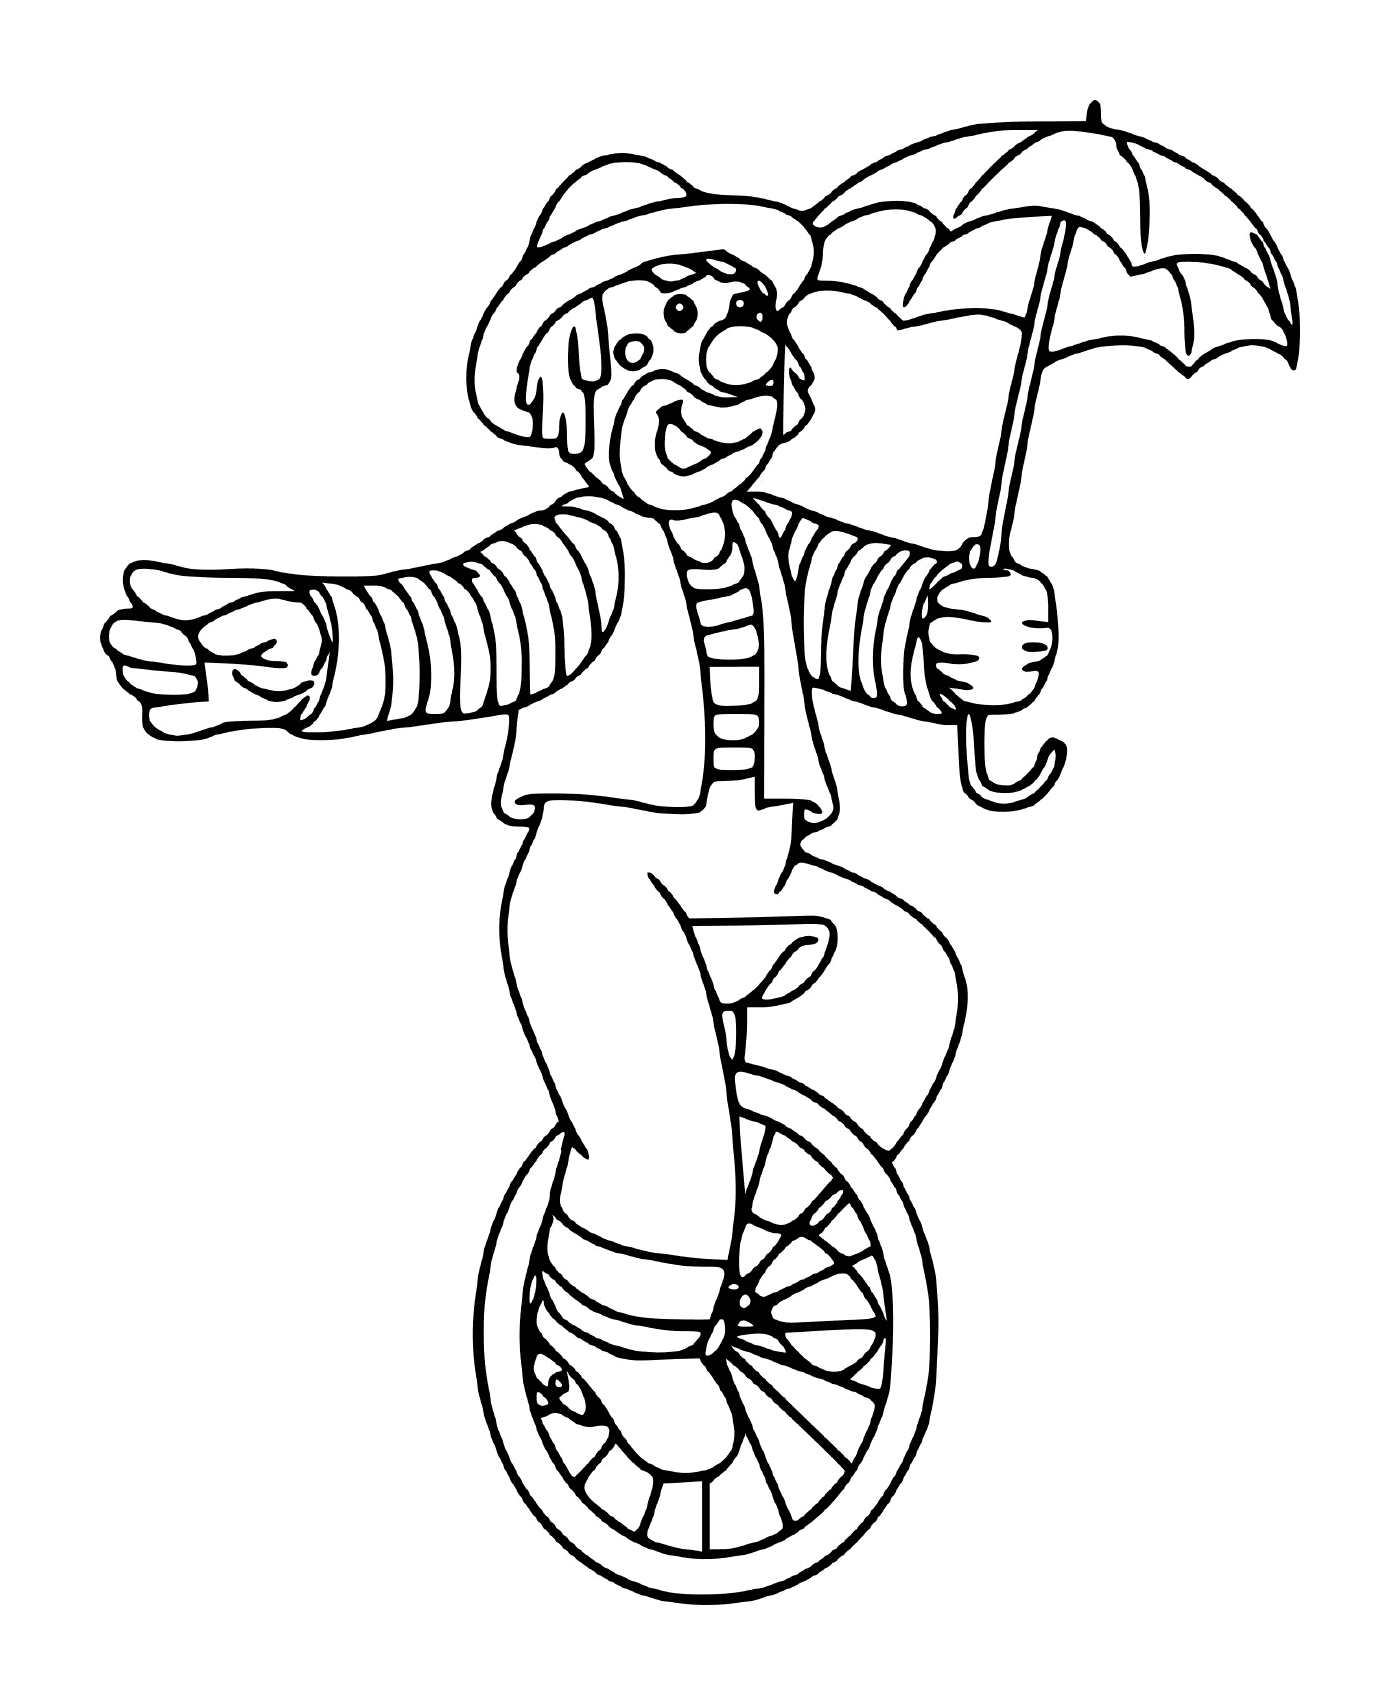  Цирковый клоун, балансированный на колесе с зонтиком 